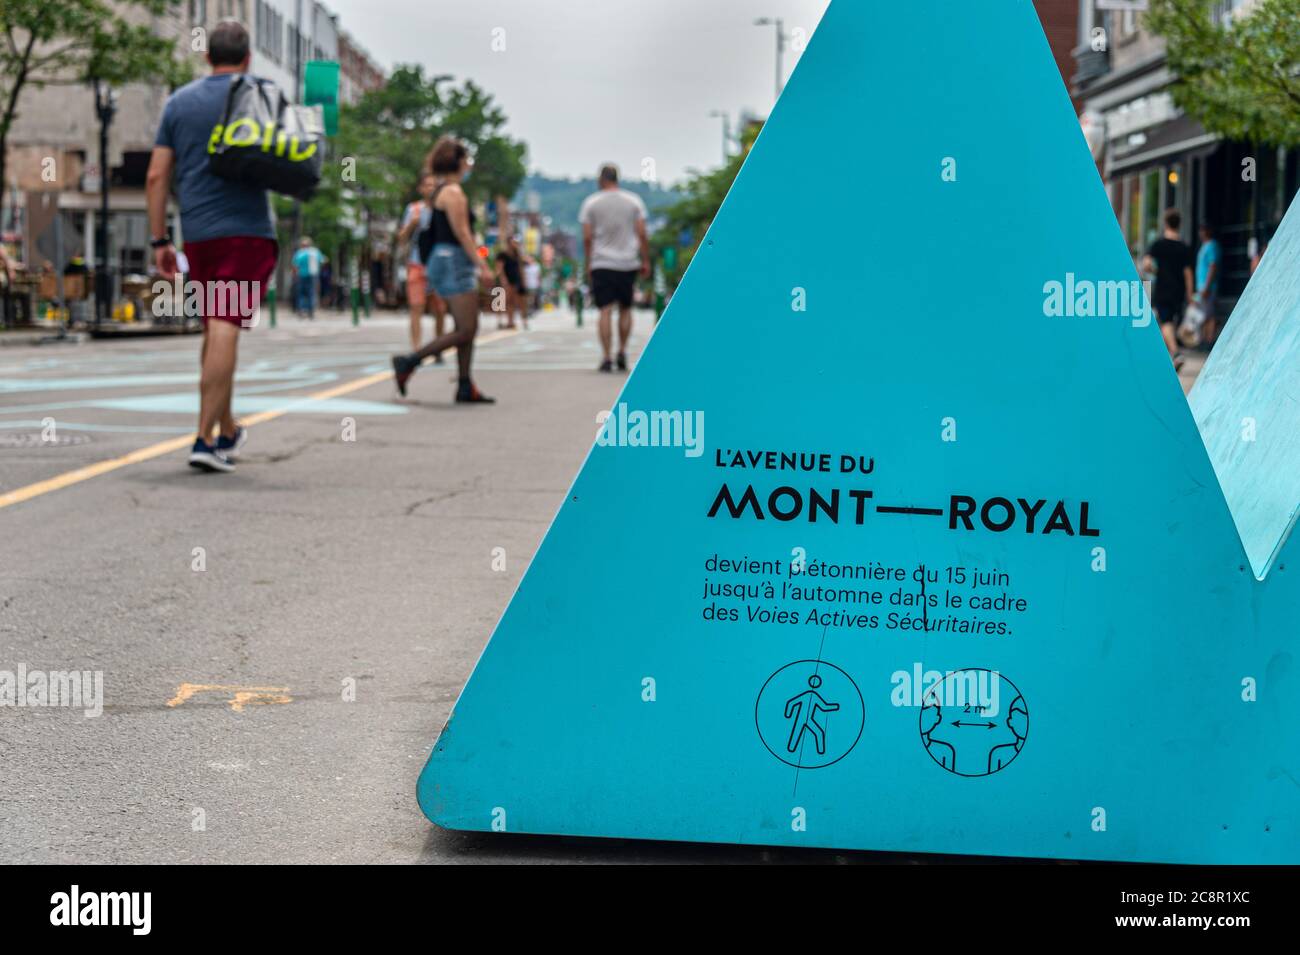 Montréal, CA - 26 juillet 2020 : voies active des sécurités (circuit de transport actif sécurisé) sur l'avenue du Mont-Royal pendant la pandémie Covid-19 Banque D'Images